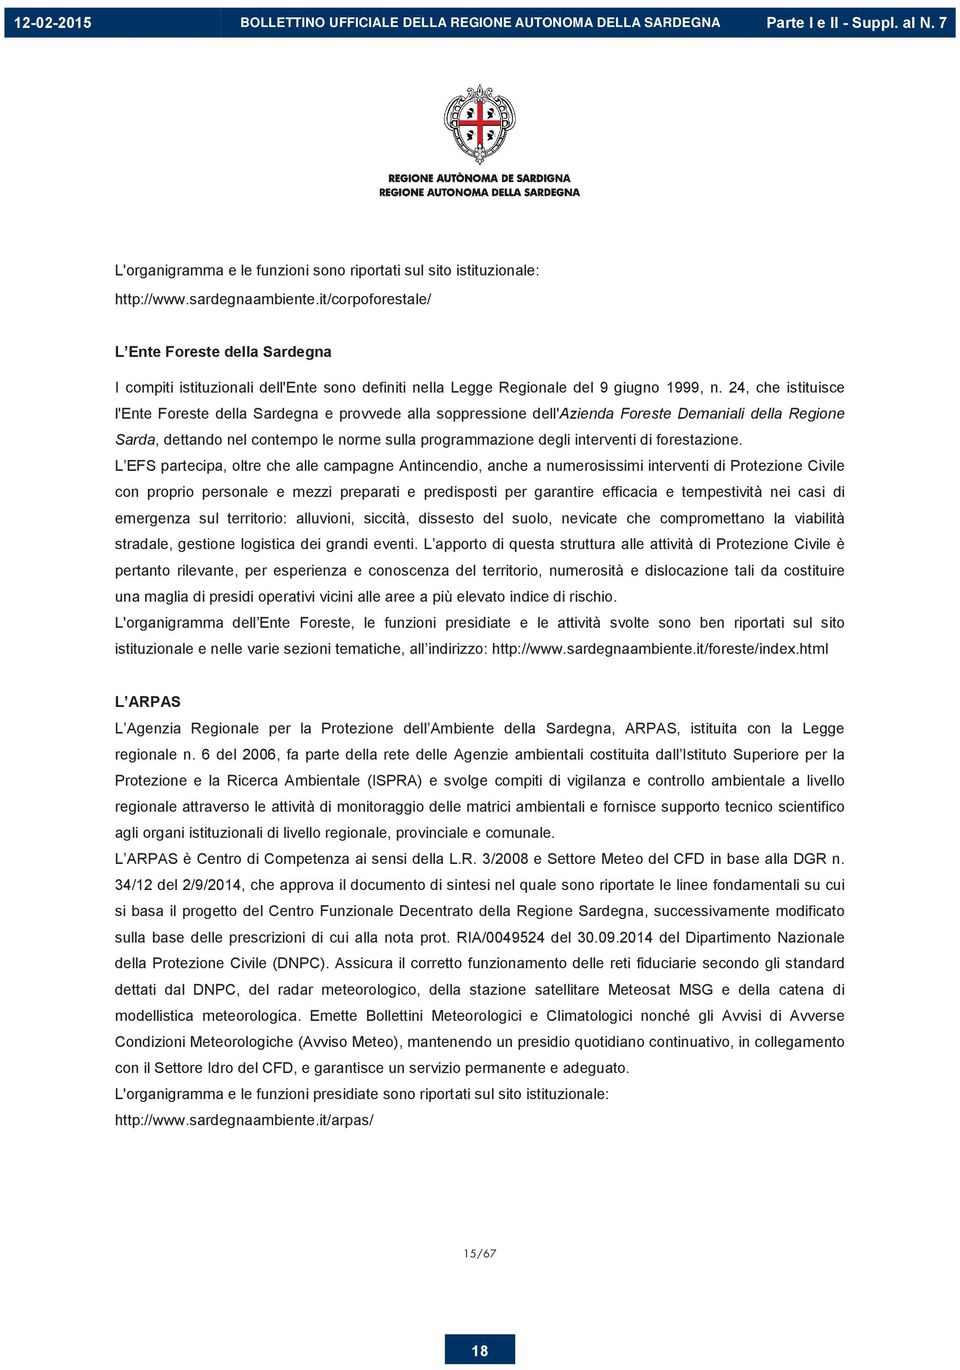 24, che istituisce l'ente Foreste della Sardegna e provvede alla soppressione dell'azienda Foreste Demaniali della Regione Sarda, dettando nel contempo le norme sulla programmazione degli interventi